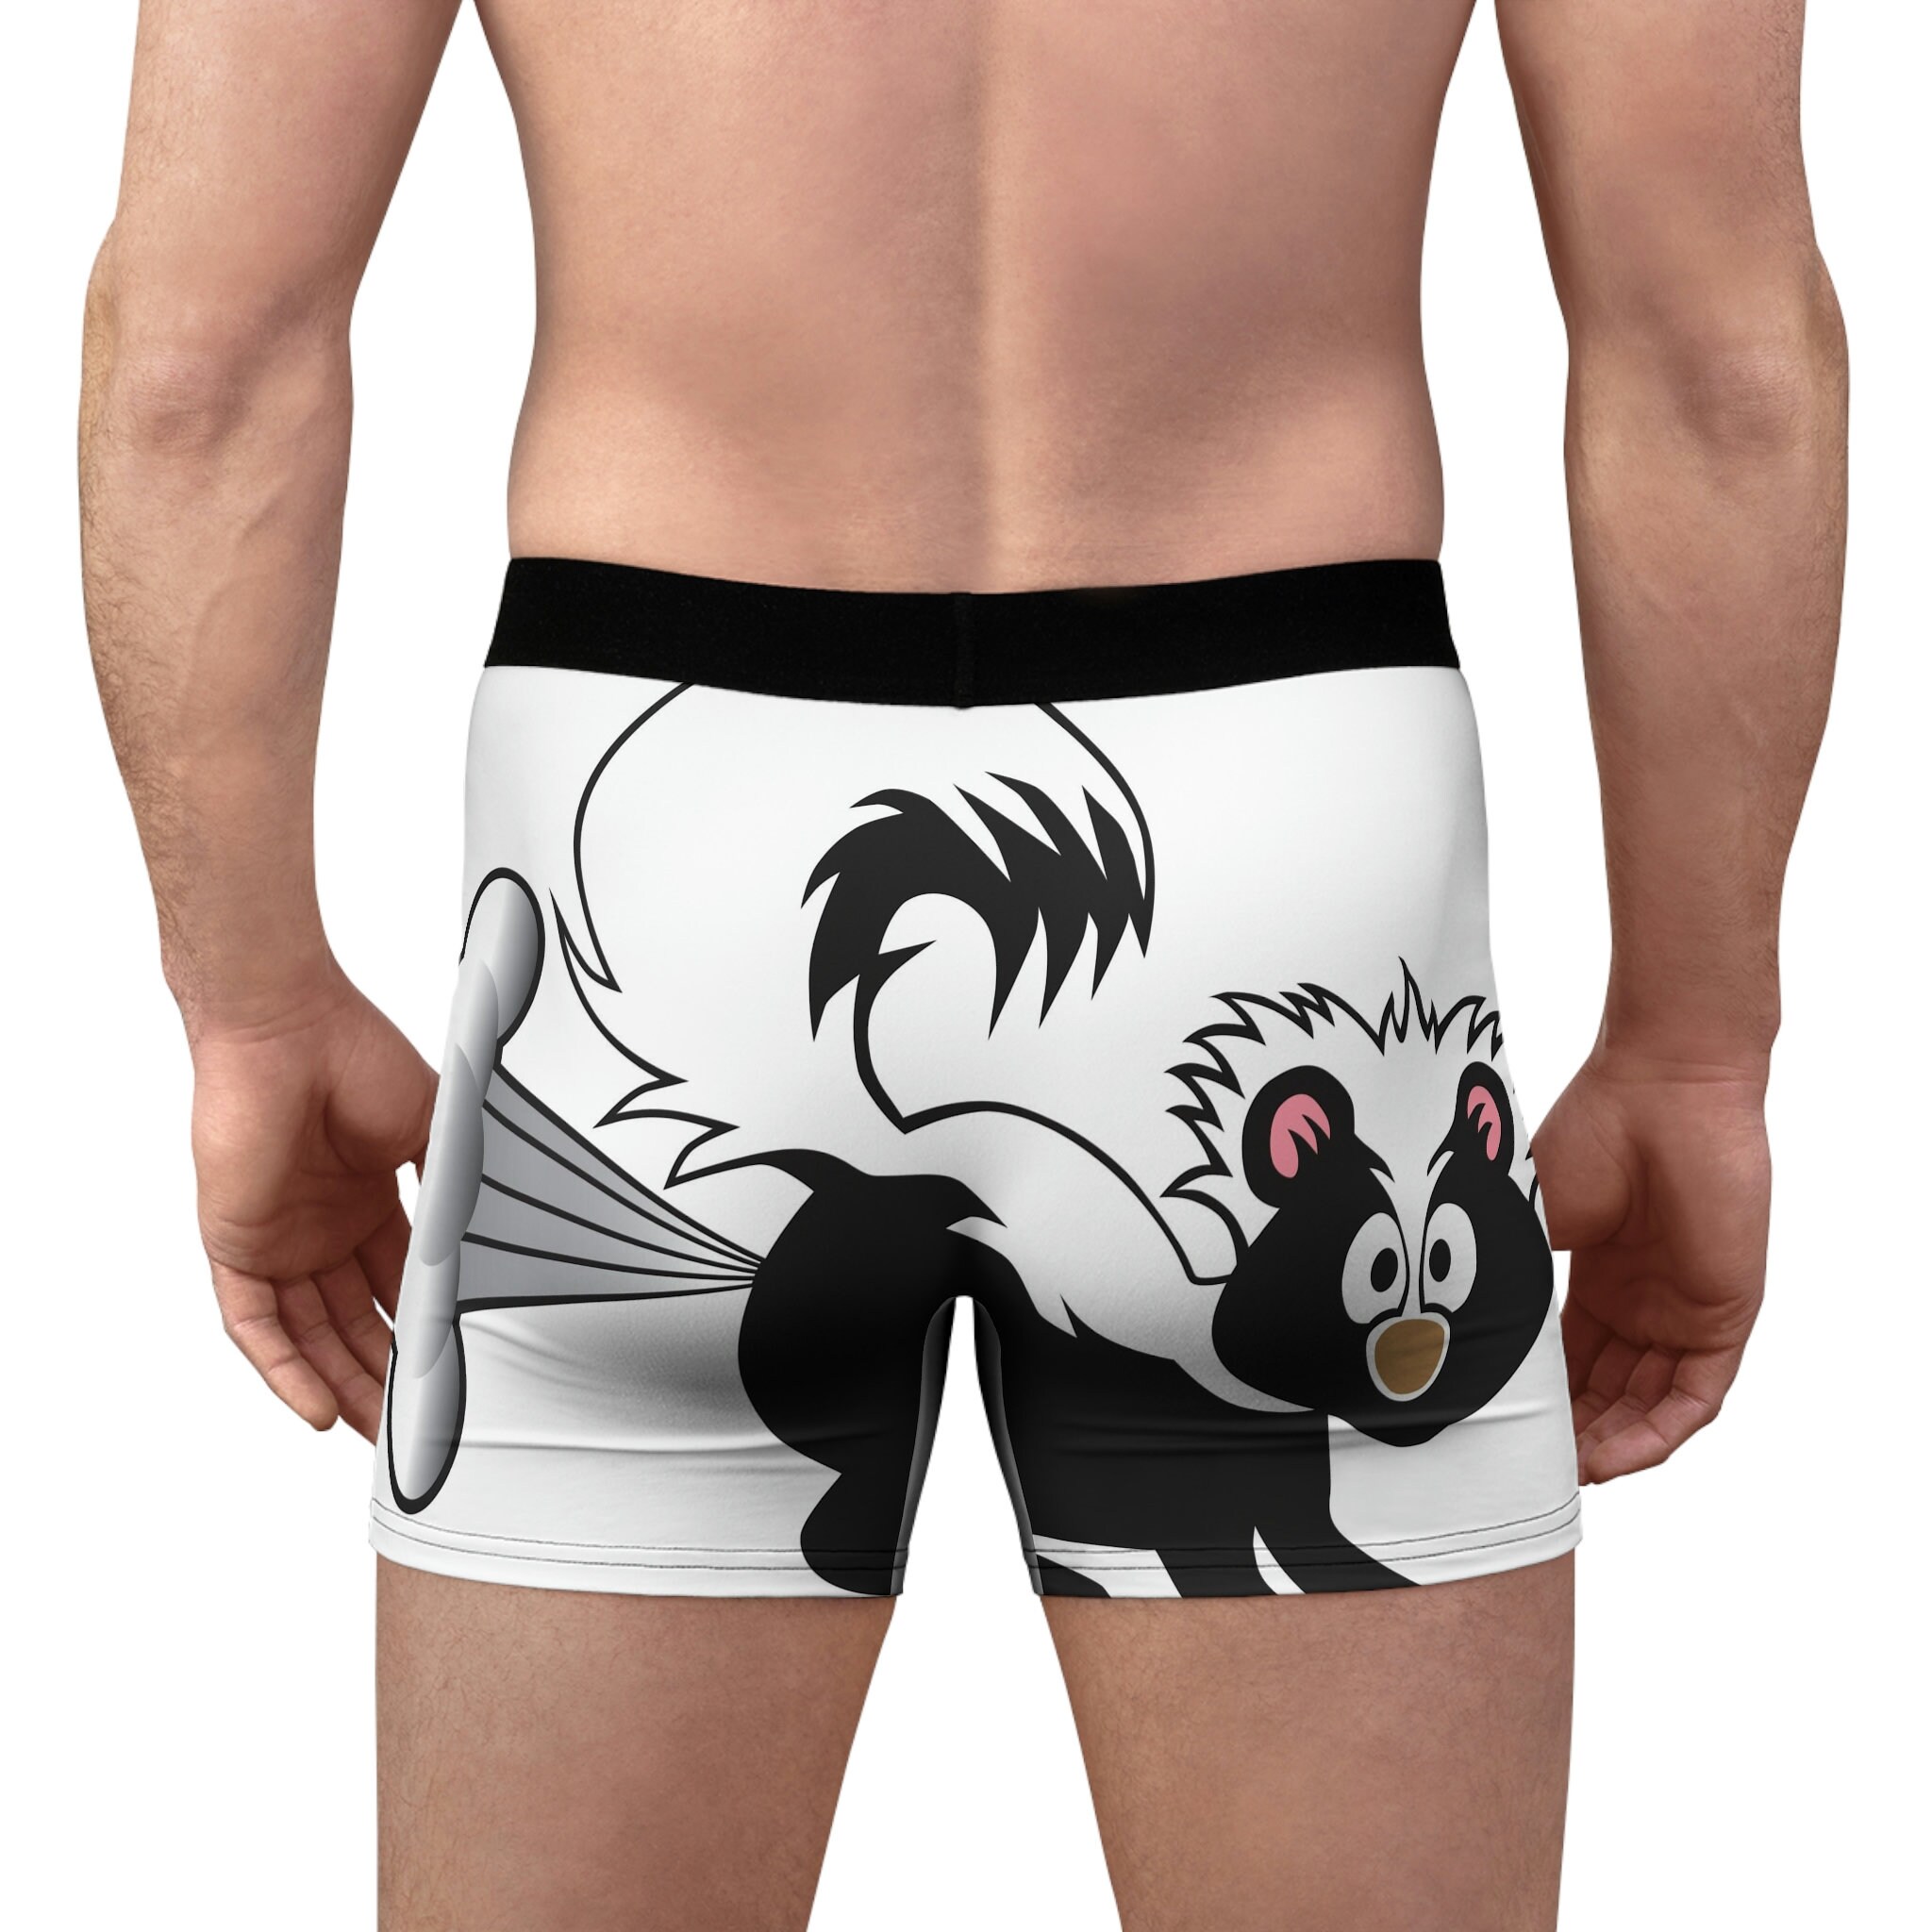 Fun Novelty Boxer Briefs for Men Fart Champ Underwear Gag Gift